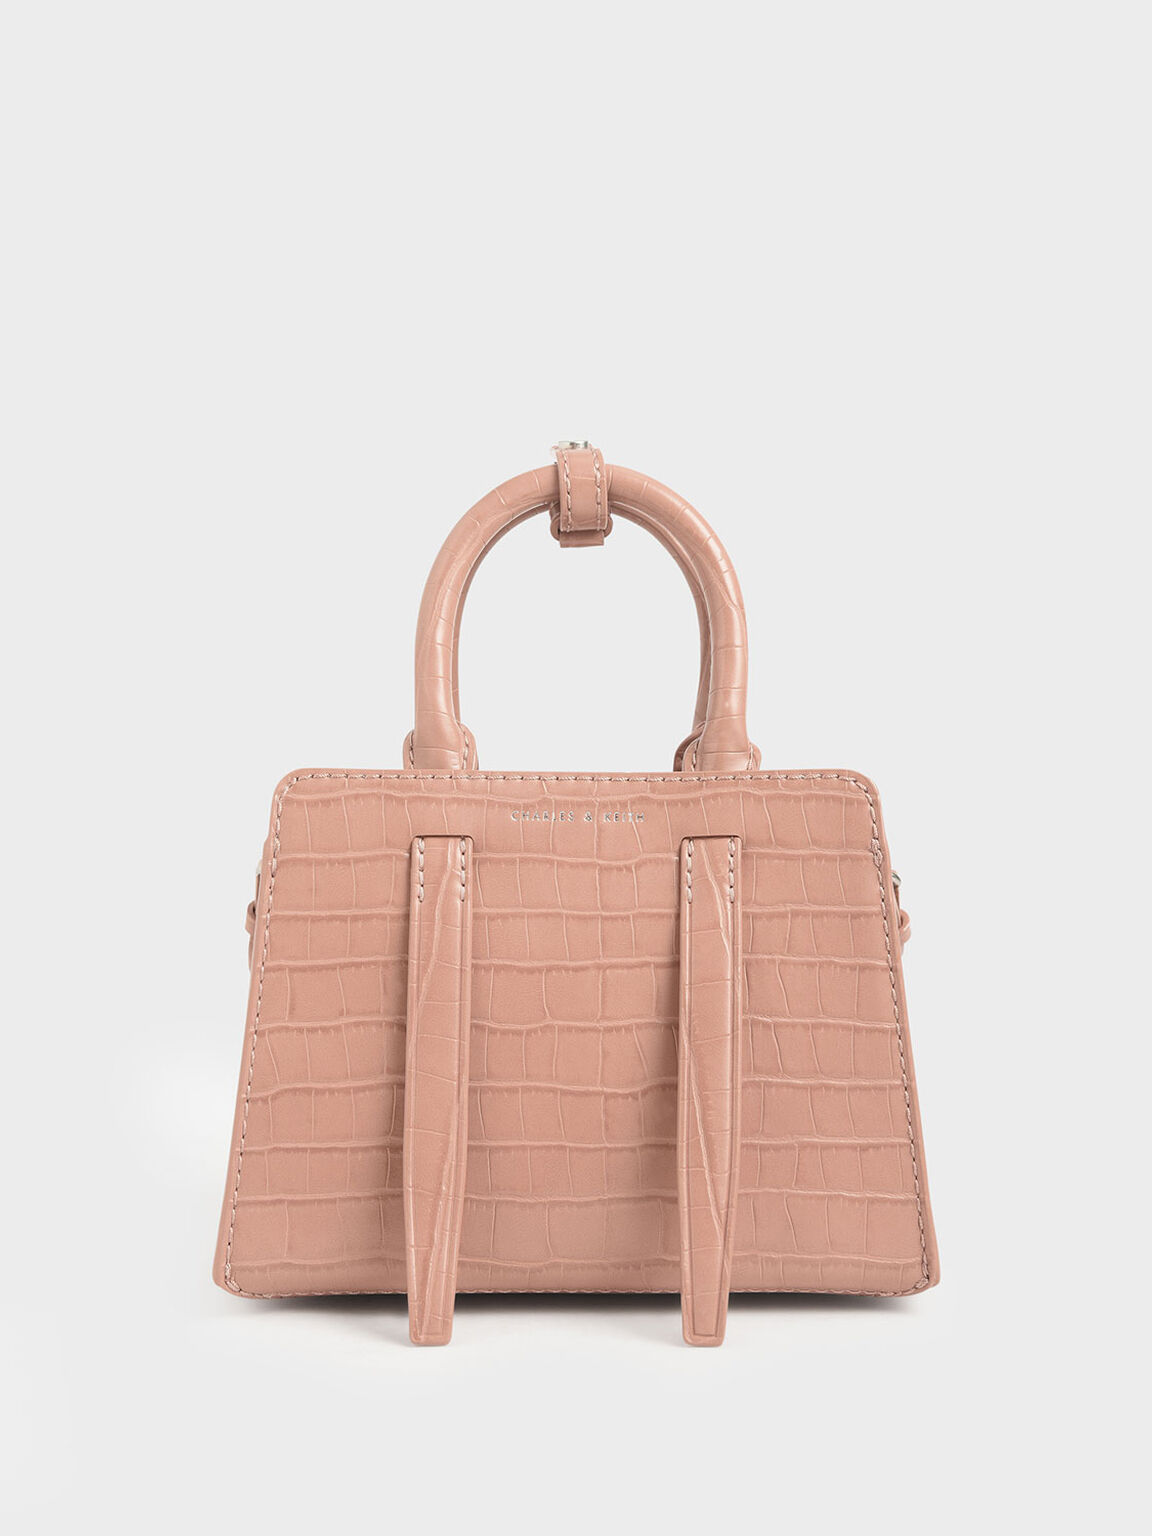 鱷魚紋中型手提包, 嫩粉色, hi-res